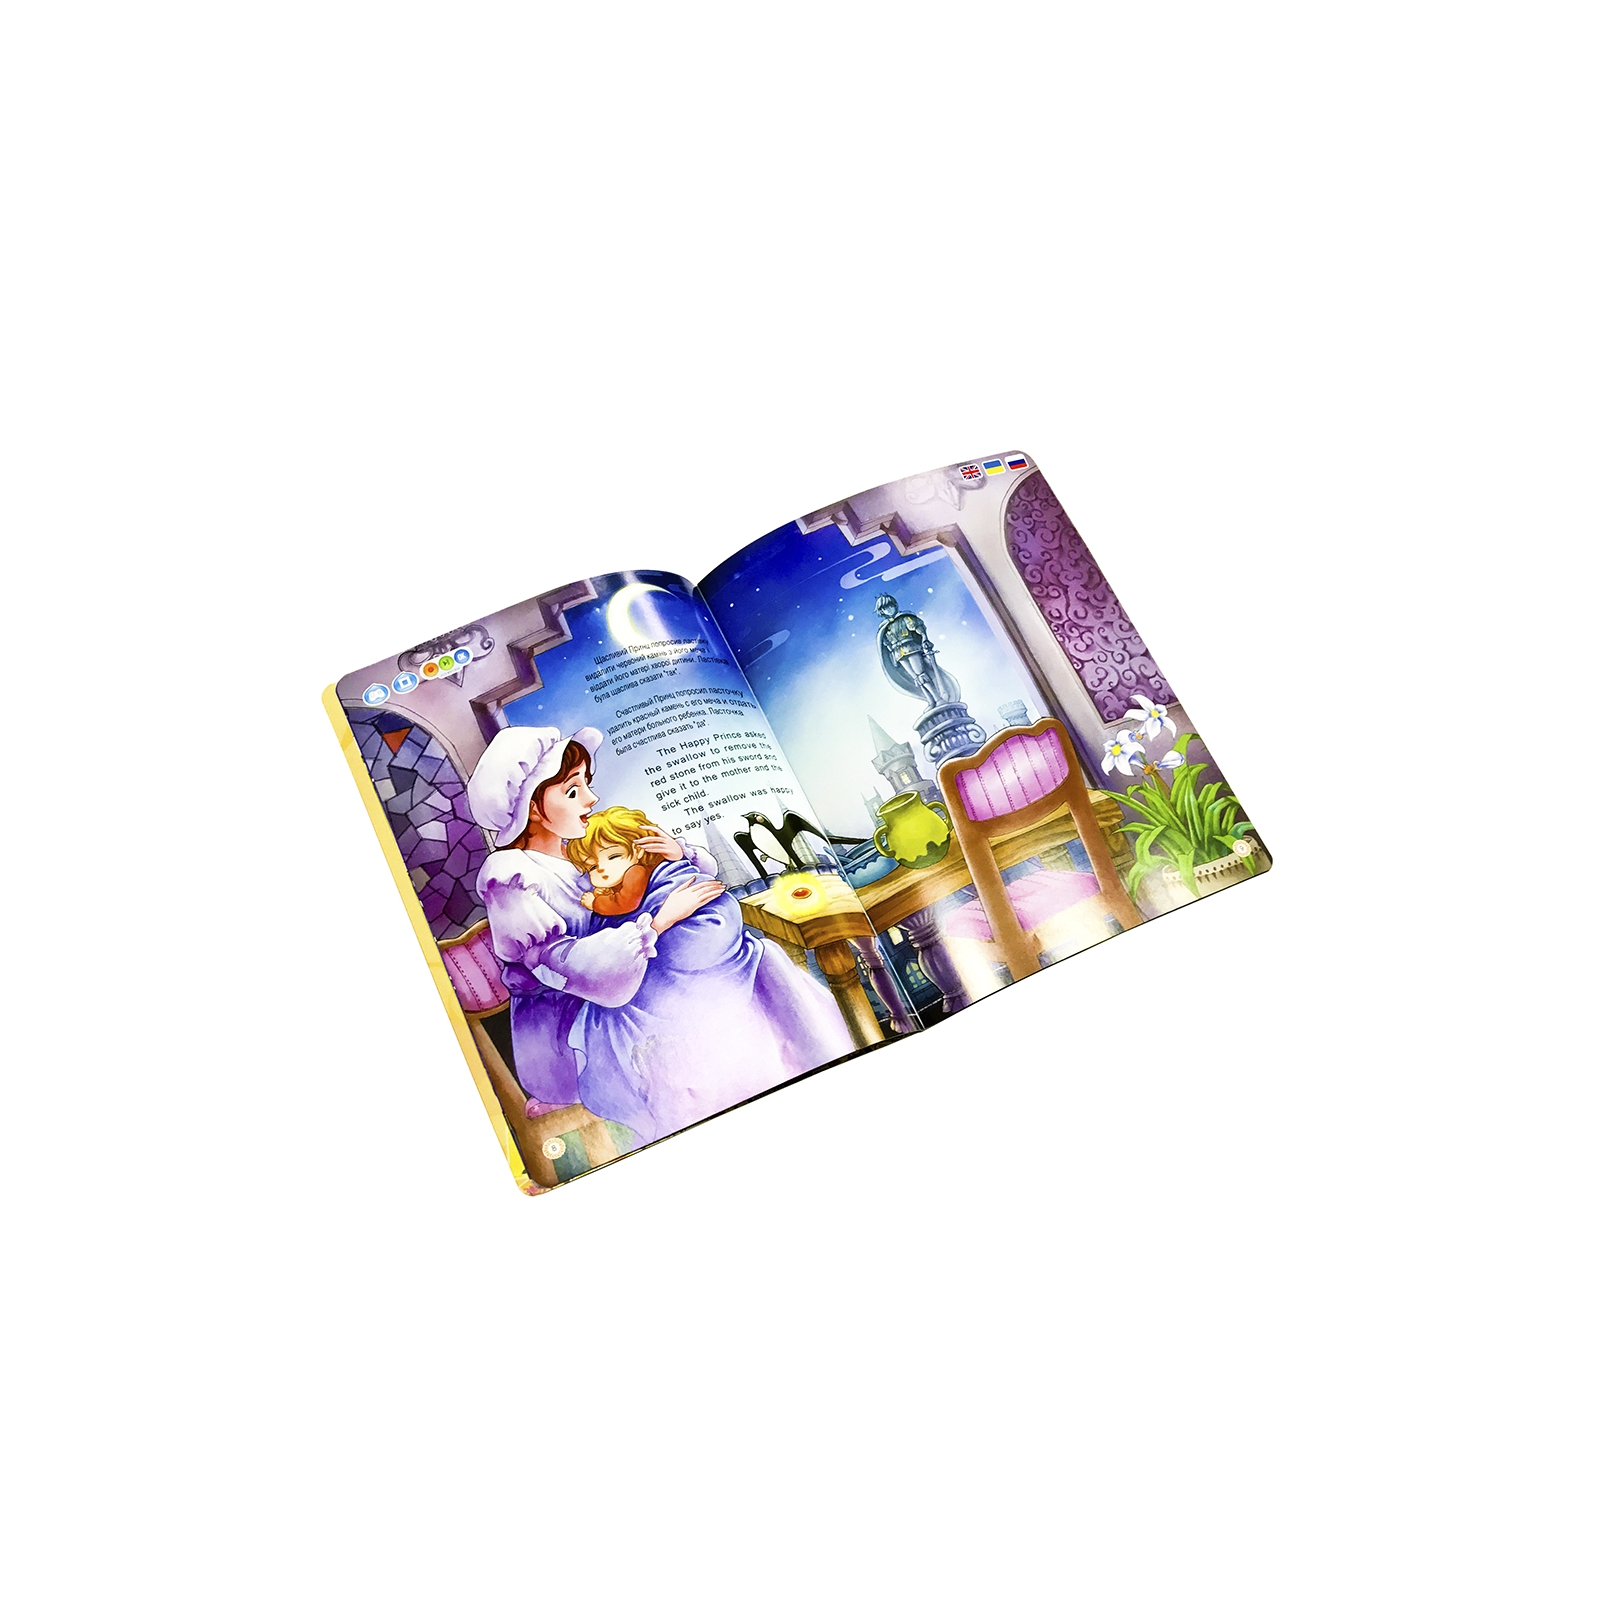 Интерактивная игрушка Smart Koala развивающая книга Fairy Tales (Season1) 4 книги (SKSFTS1) изображение 10